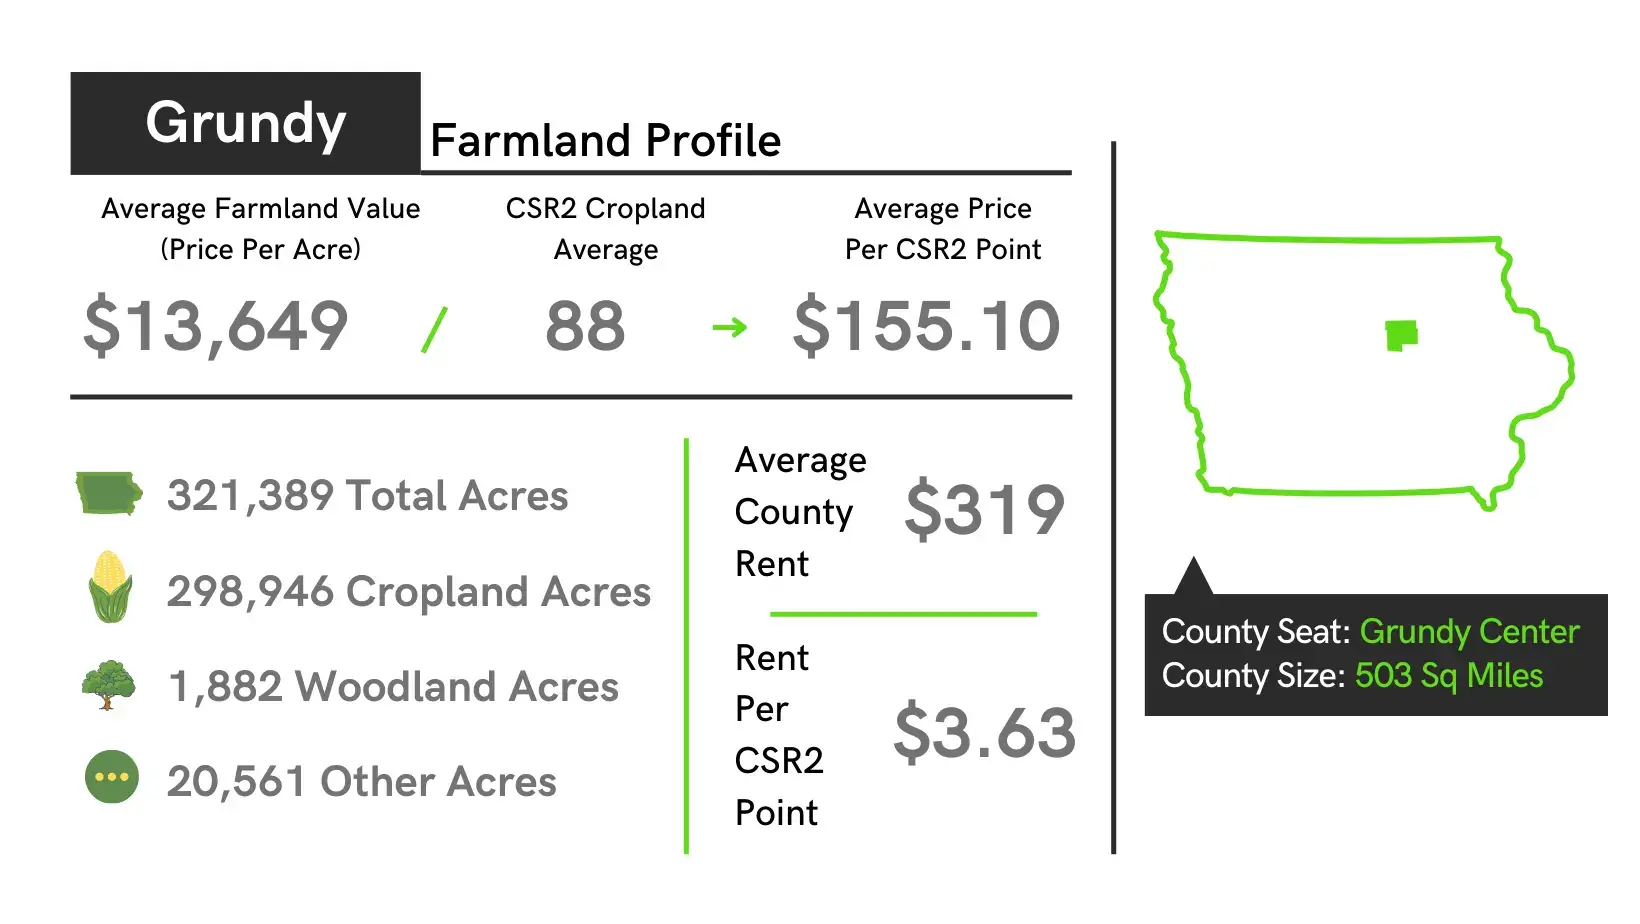 Grundy County Farmland Profile